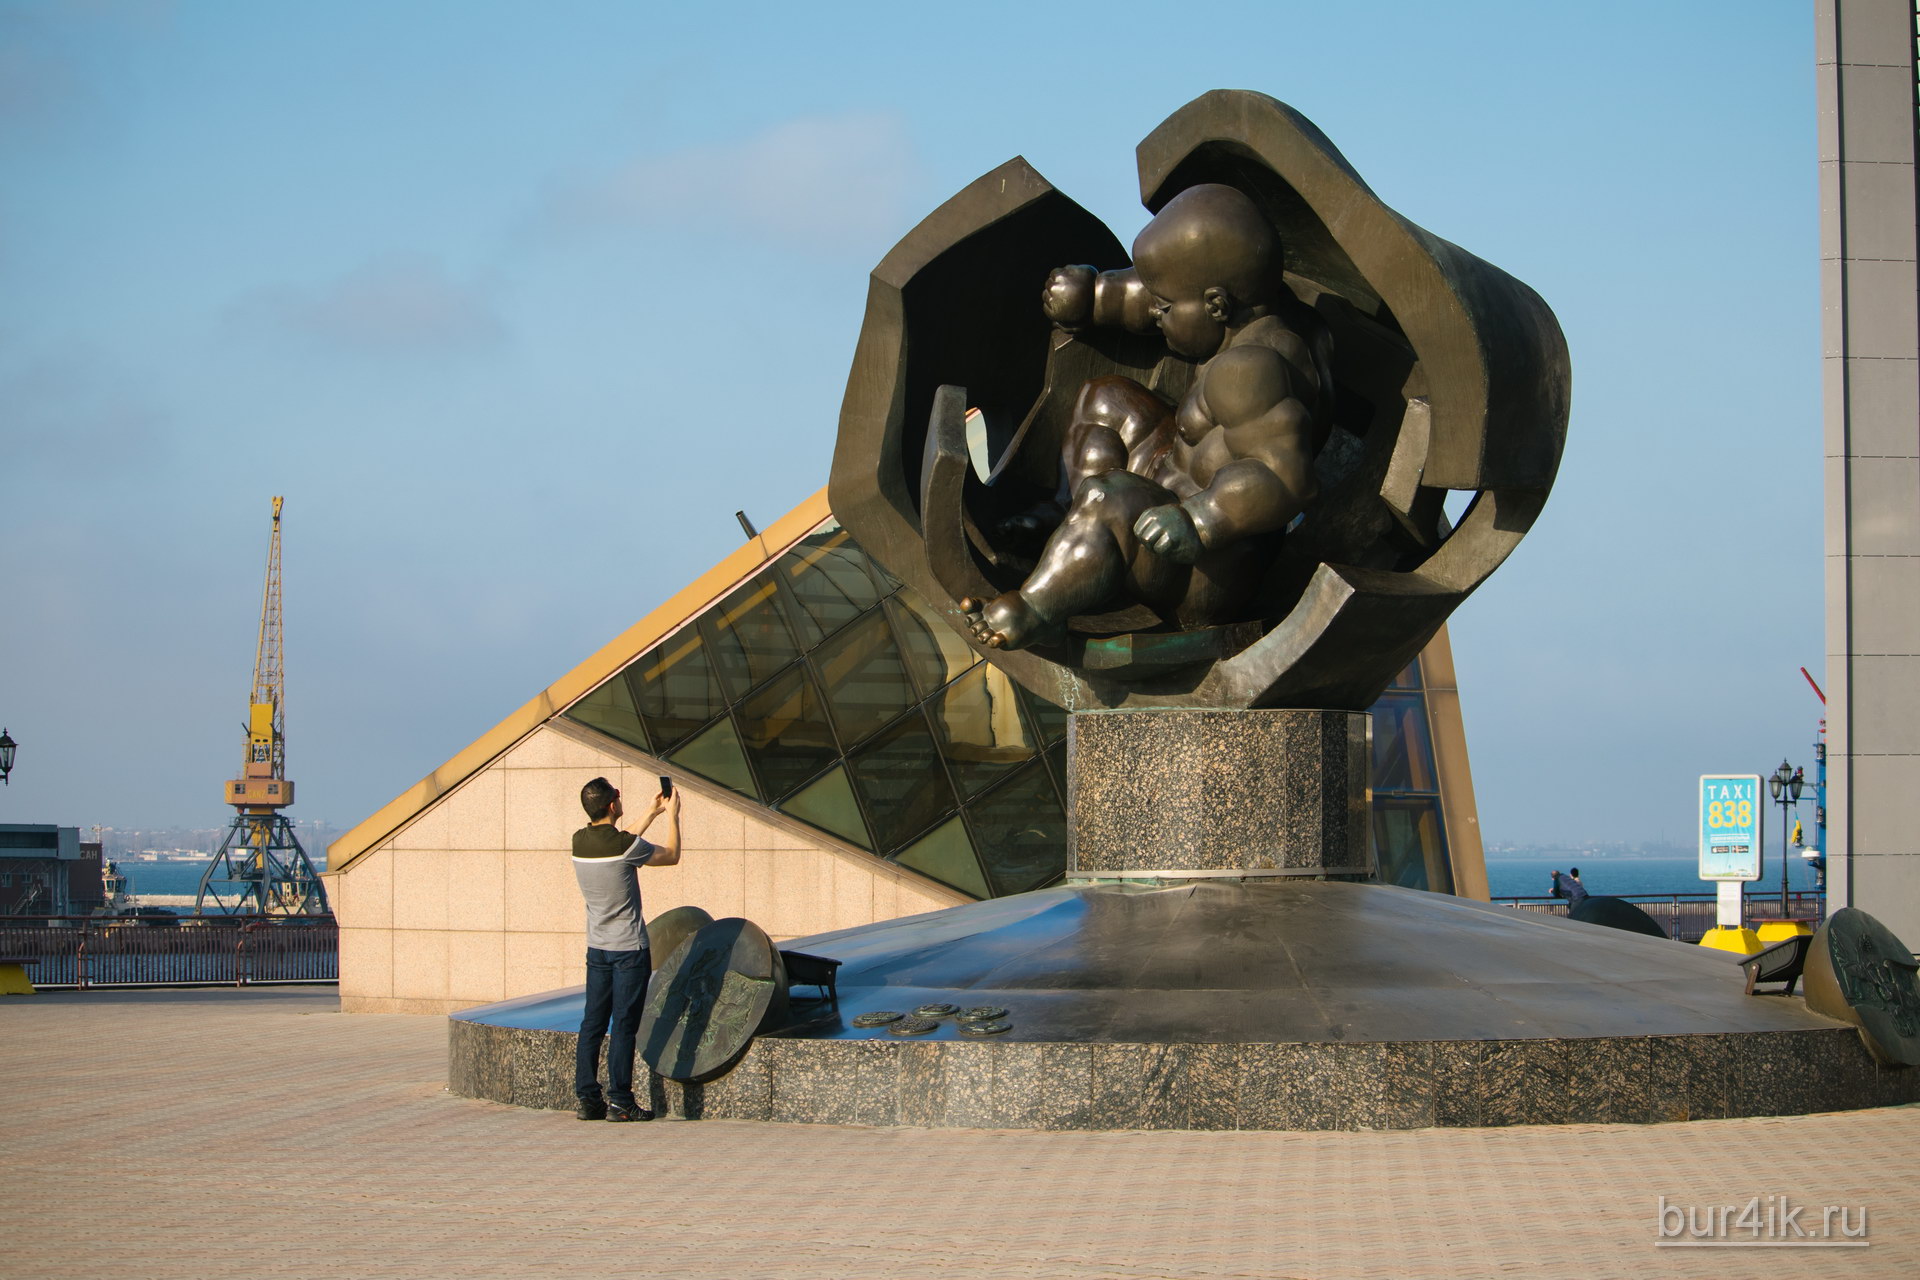 Памятник младенцу у входа на морской вокзал в Одессе 8